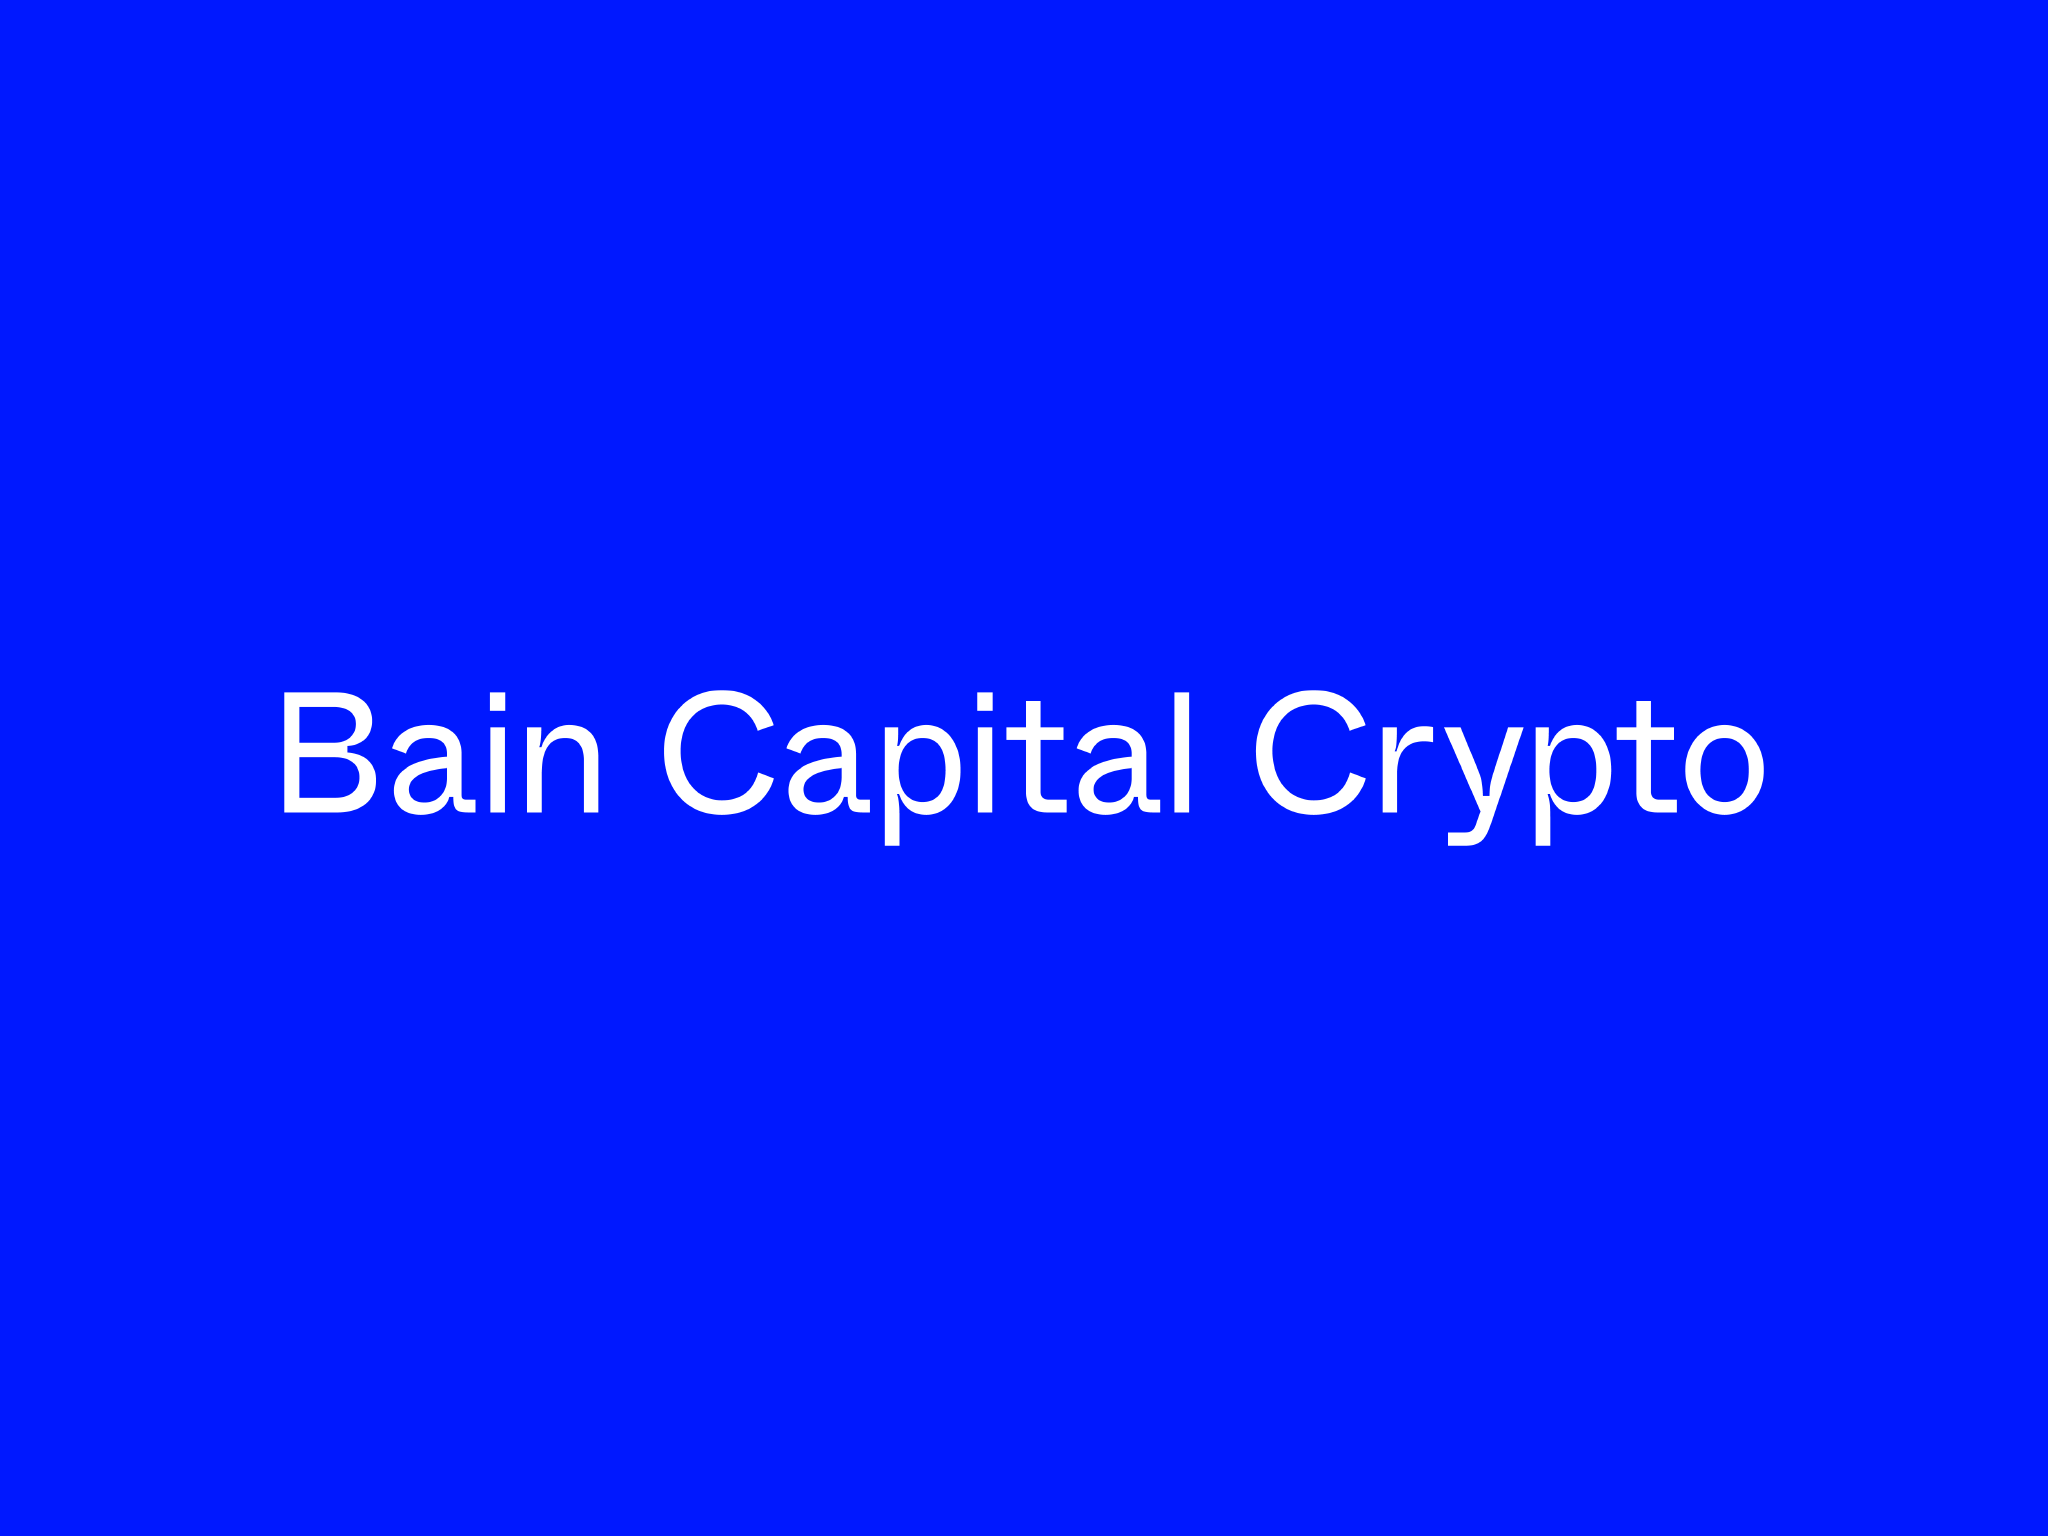 Bain Capital Crypto